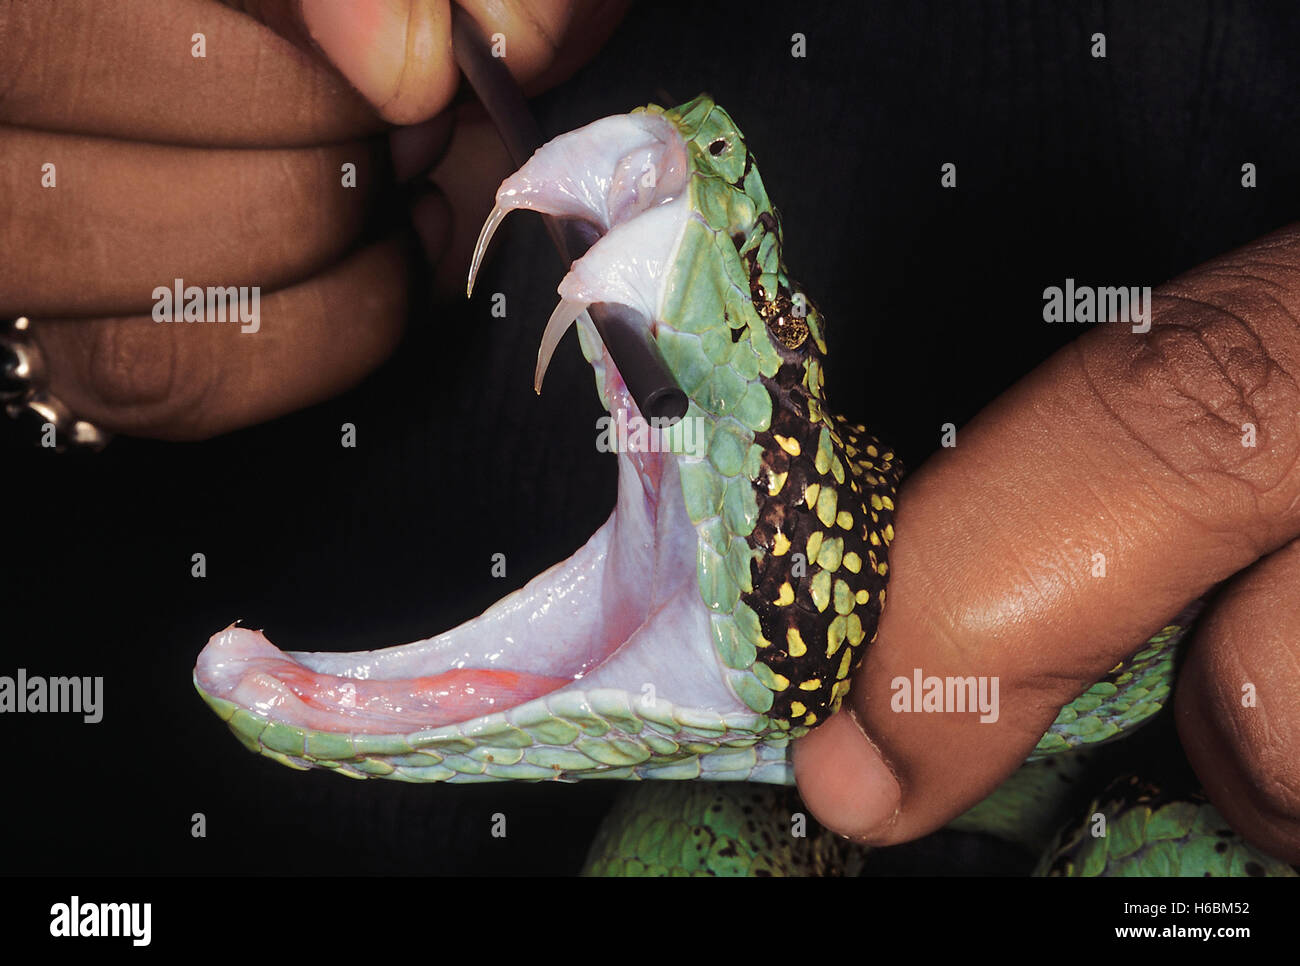 Trimeresurus Malabaricus. Malabar Grubenotter. Eine Nahaufnahme des Kopfes dieser Schlange mit den Mund offen zeigt die freiliegenden Zähne. Stockfoto